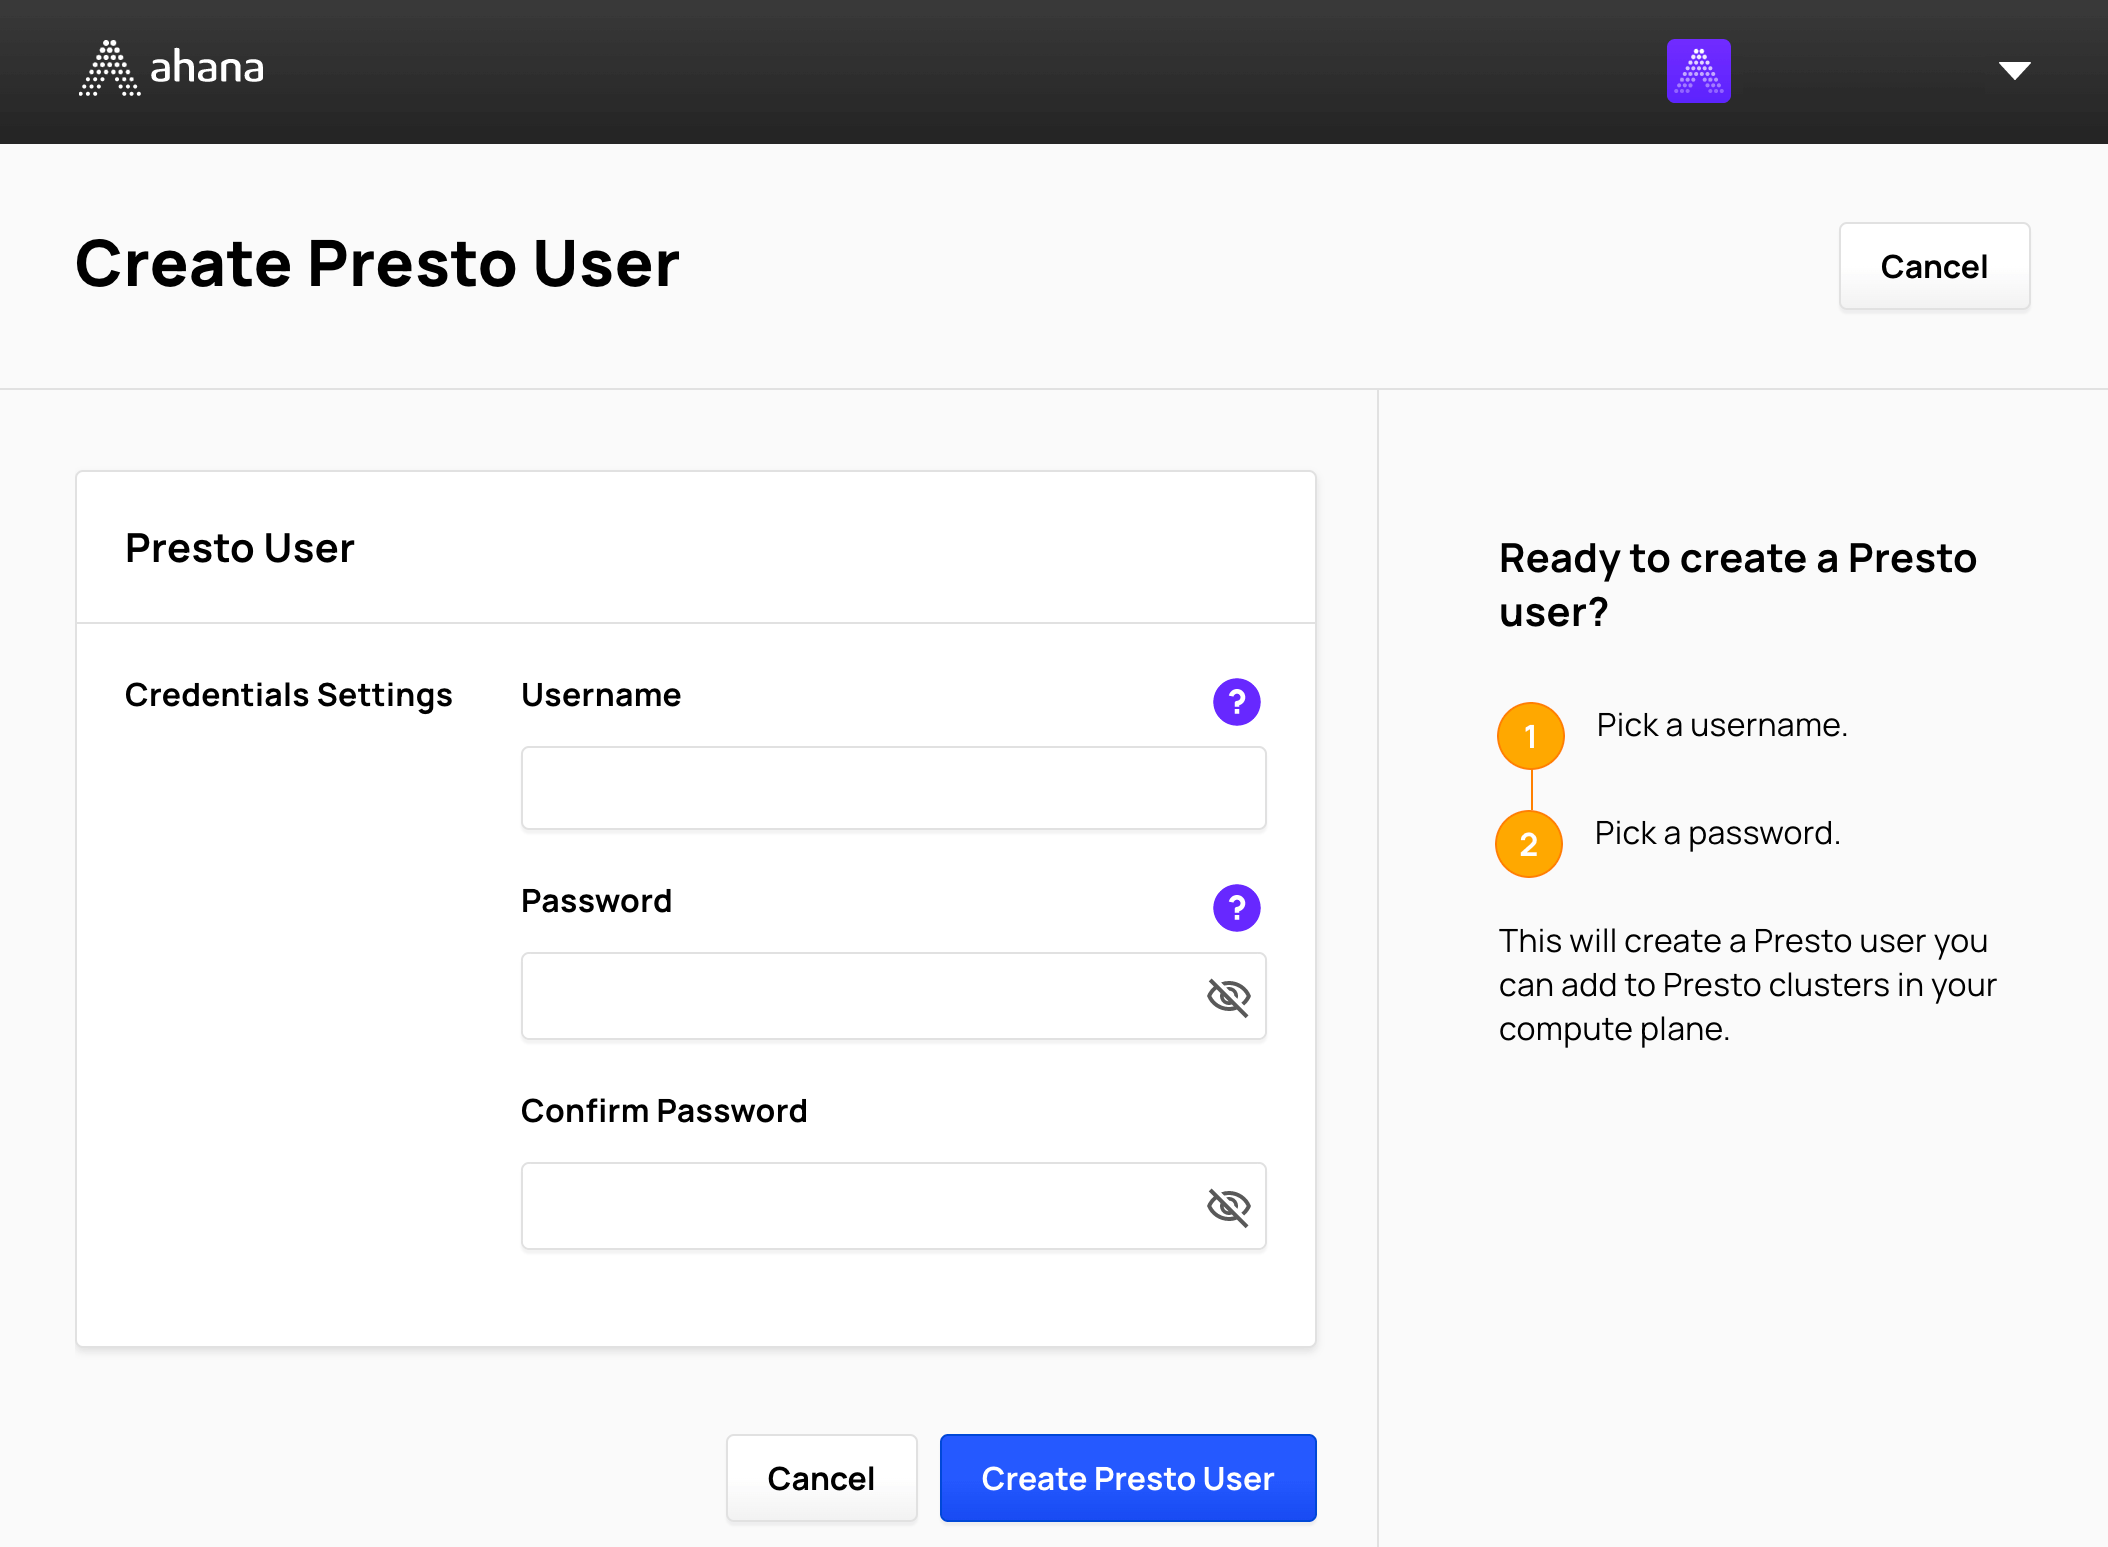 Create a Presto user